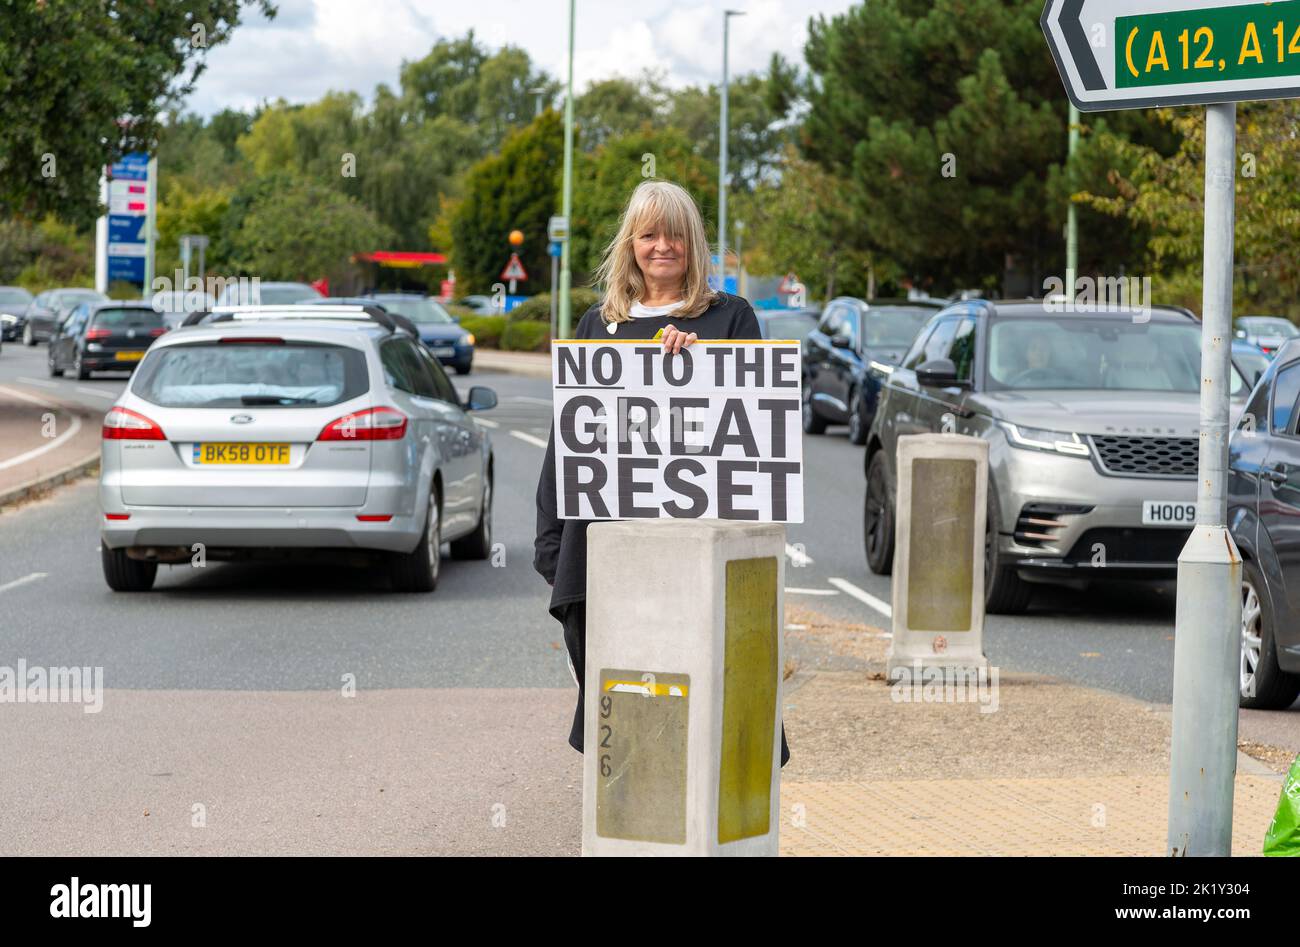 Protestation à l'affluent rond-point, Martlesham, Suffolk, Angleterre, Royaume-Uni - non à la Grande remise à zéro Banque D'Images